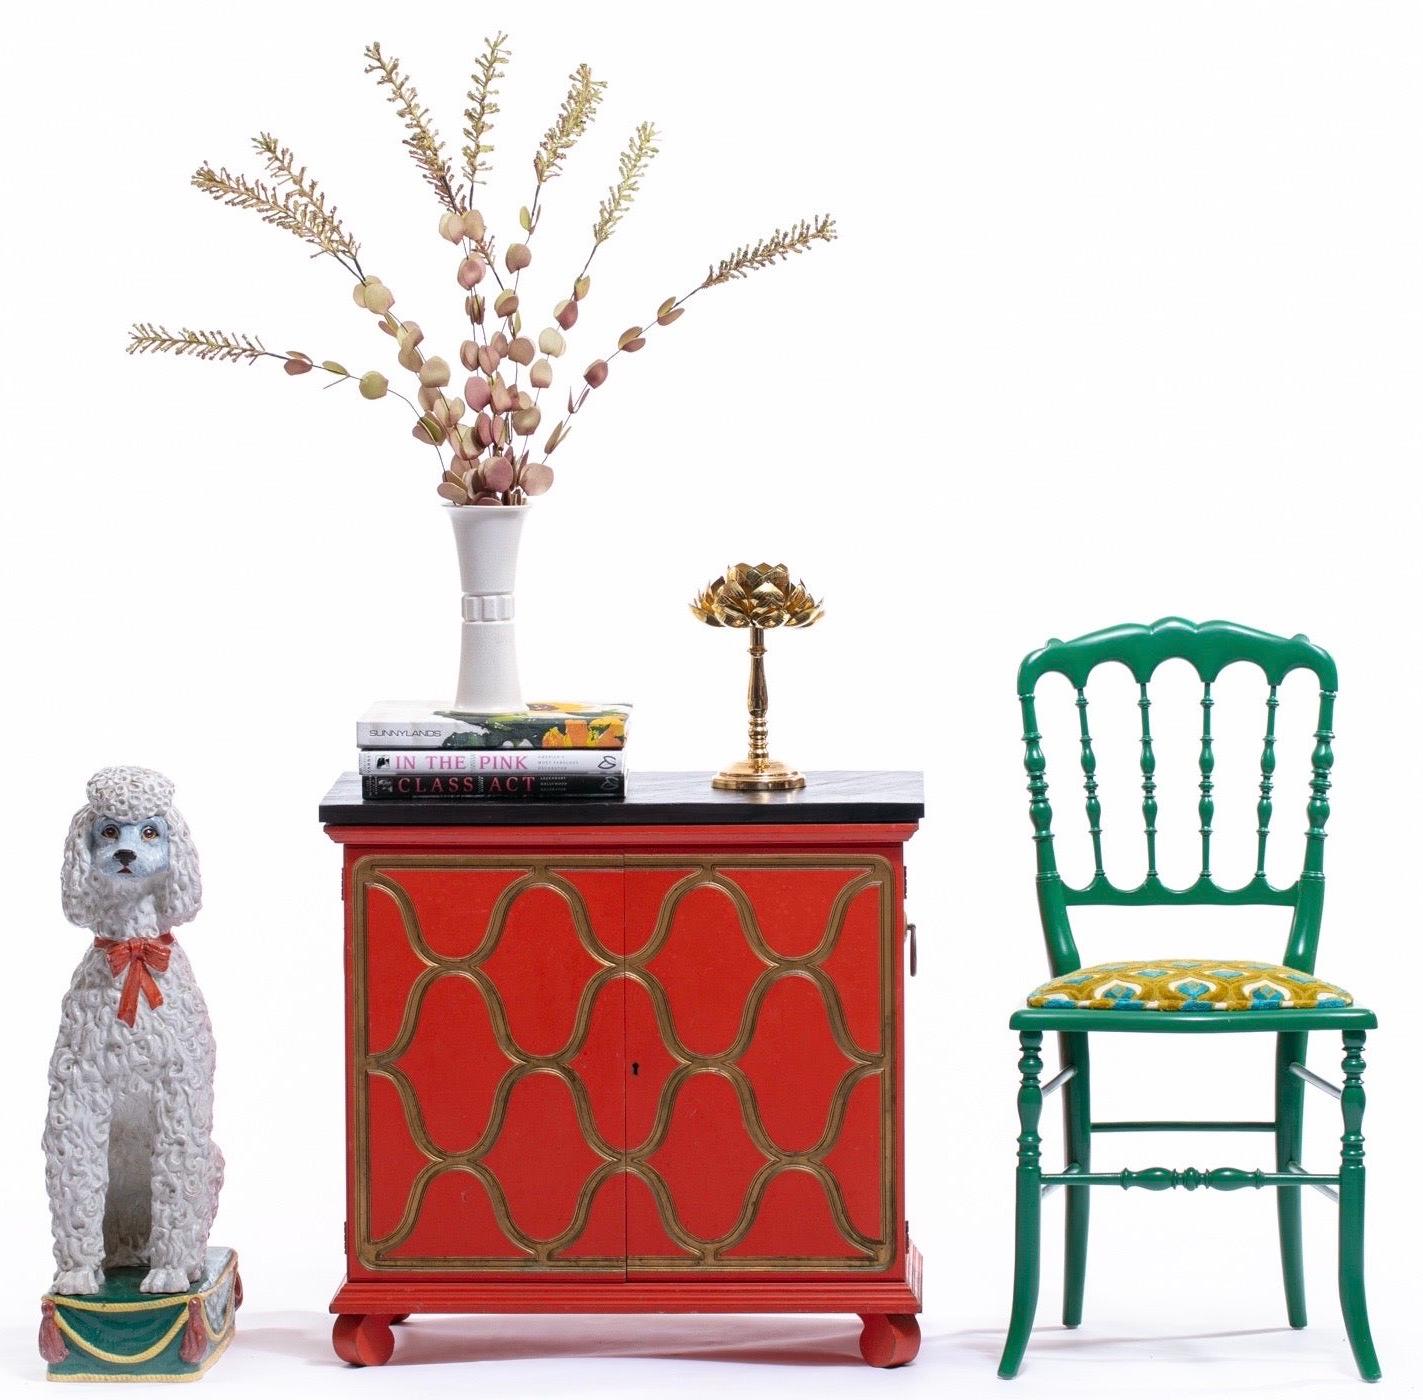 Auswahlmöglichkeiten, Auswahlmöglichkeiten! Einer von zwei lackierten Chiavari-Stühlen, die in unserem Shop erhältlich sind. Ihre Gäste werden vor Neid erblassen. Skulptural, luxuriös, fröhlich und schick, um 1960. Unser einzigartiger Chiavari-Stuhl